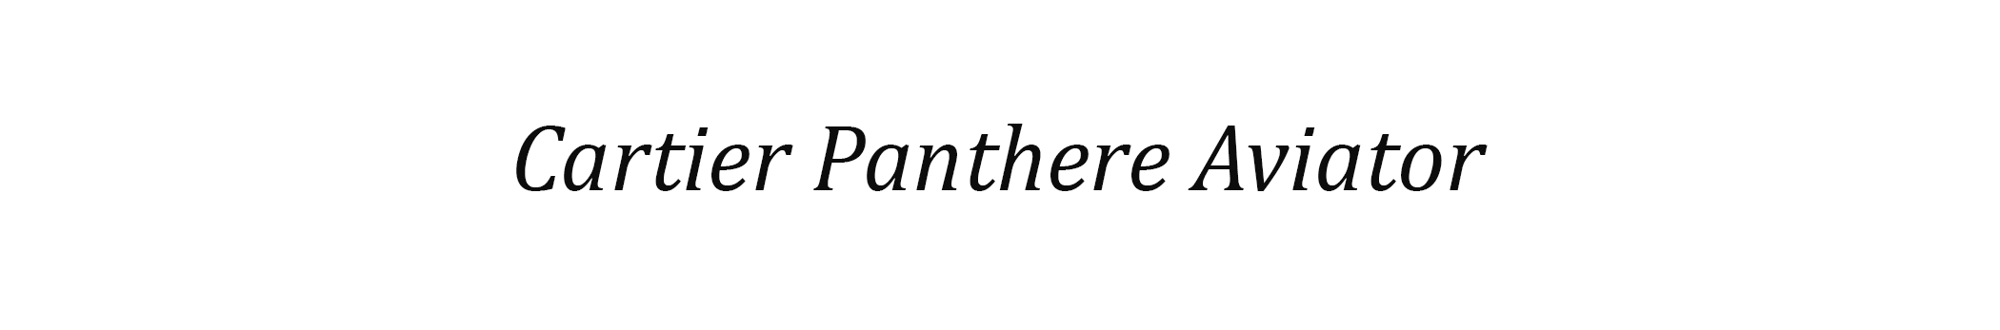 Cartier Panthere Aviator